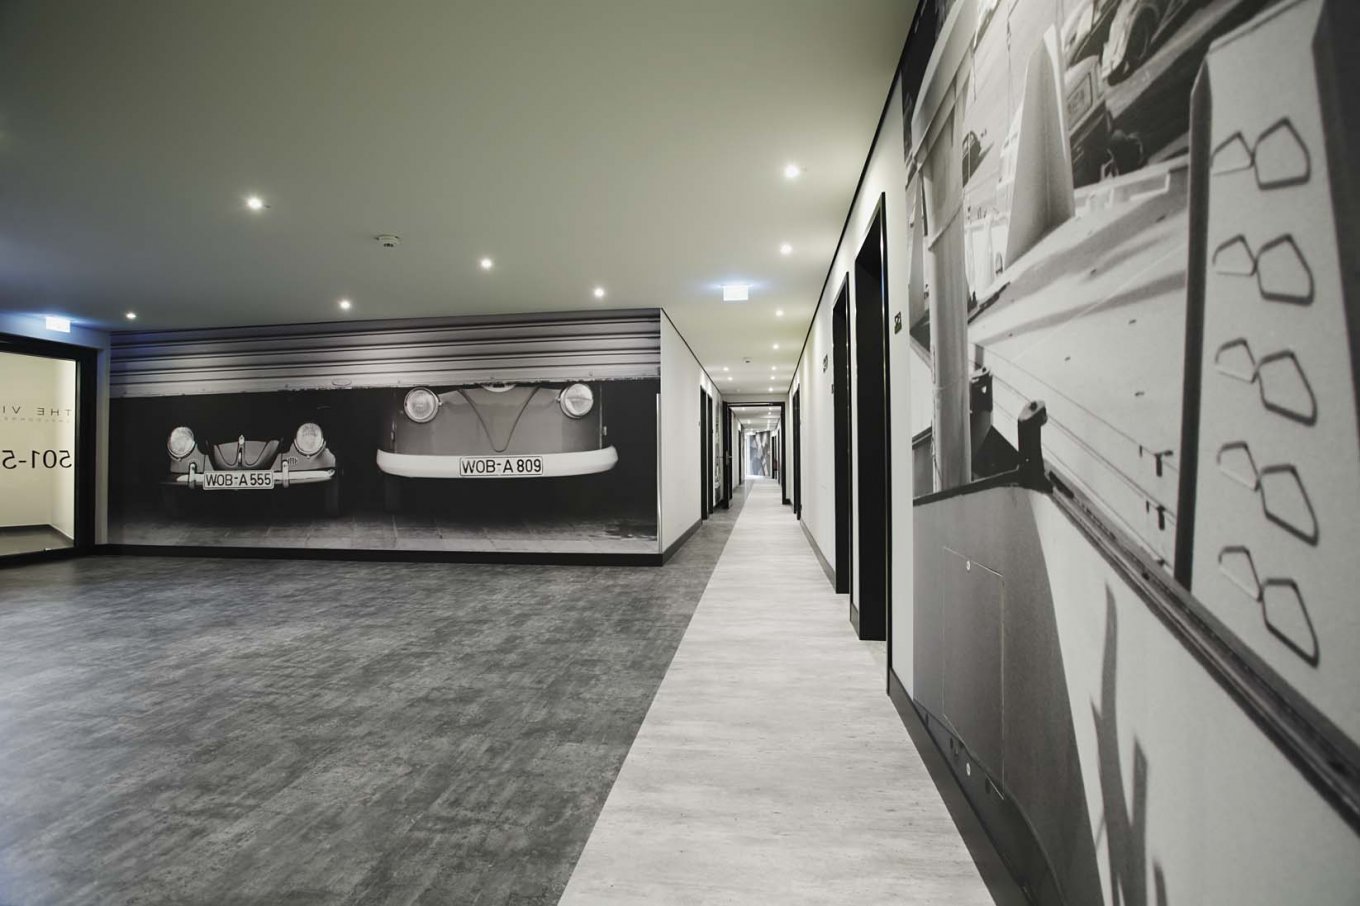 wineo Purline Bioboden schwarz weiß modern Flur Wandgstaltung Auto Hotel